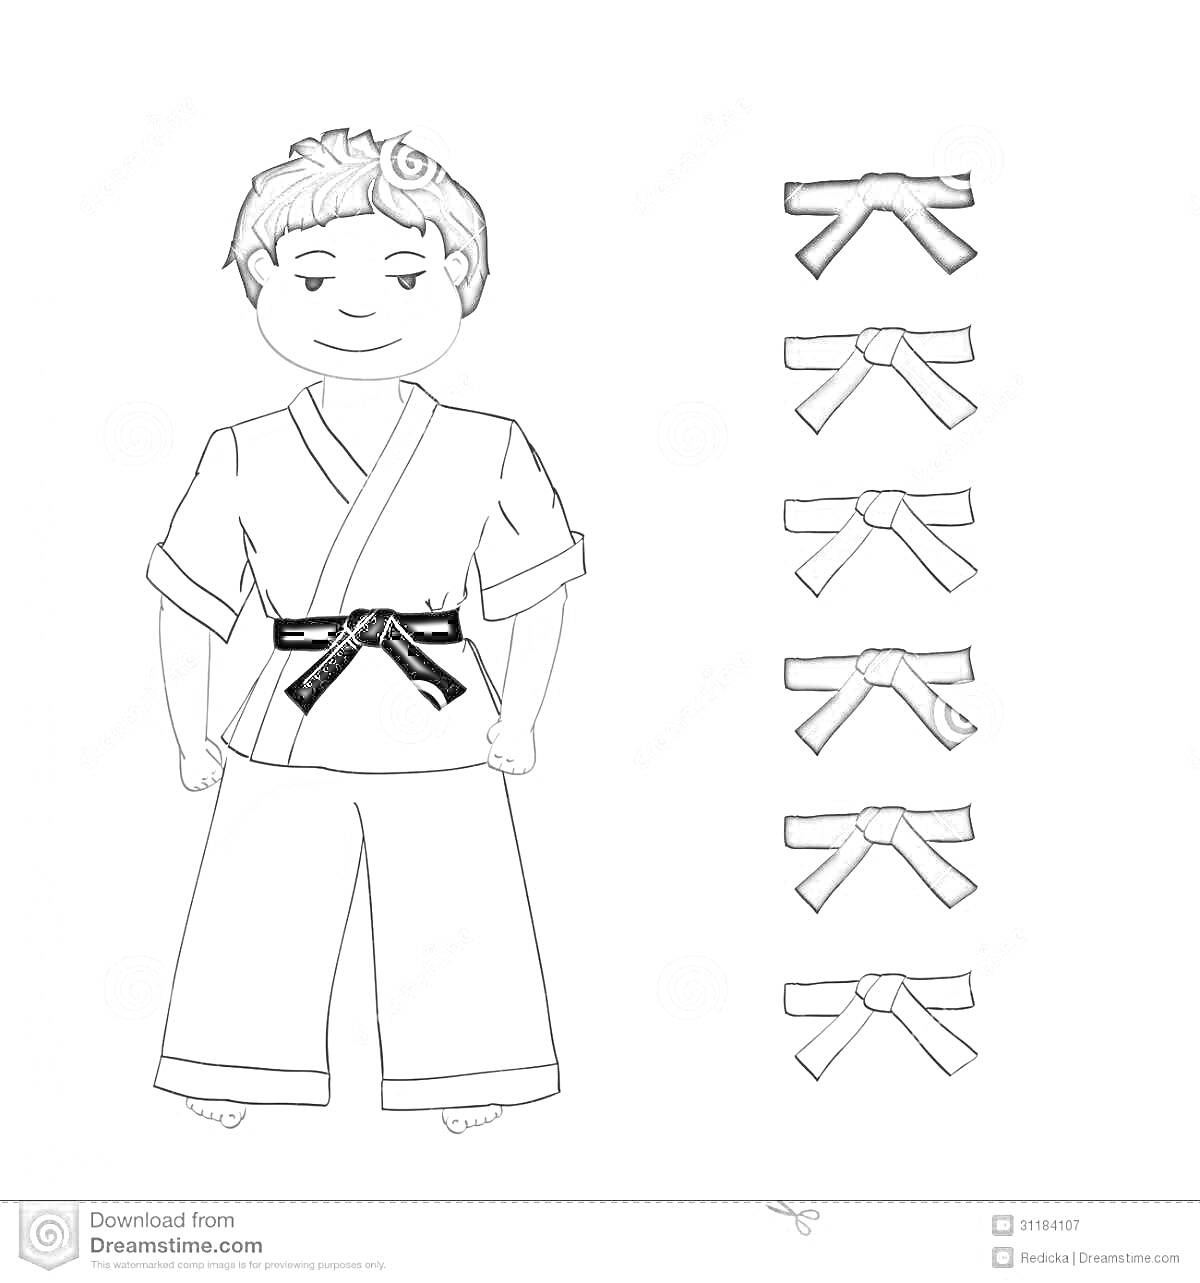 Раскраска Ребенок в кимоно для дзюдо с черным поясом, рядом набор поясов разных цветов